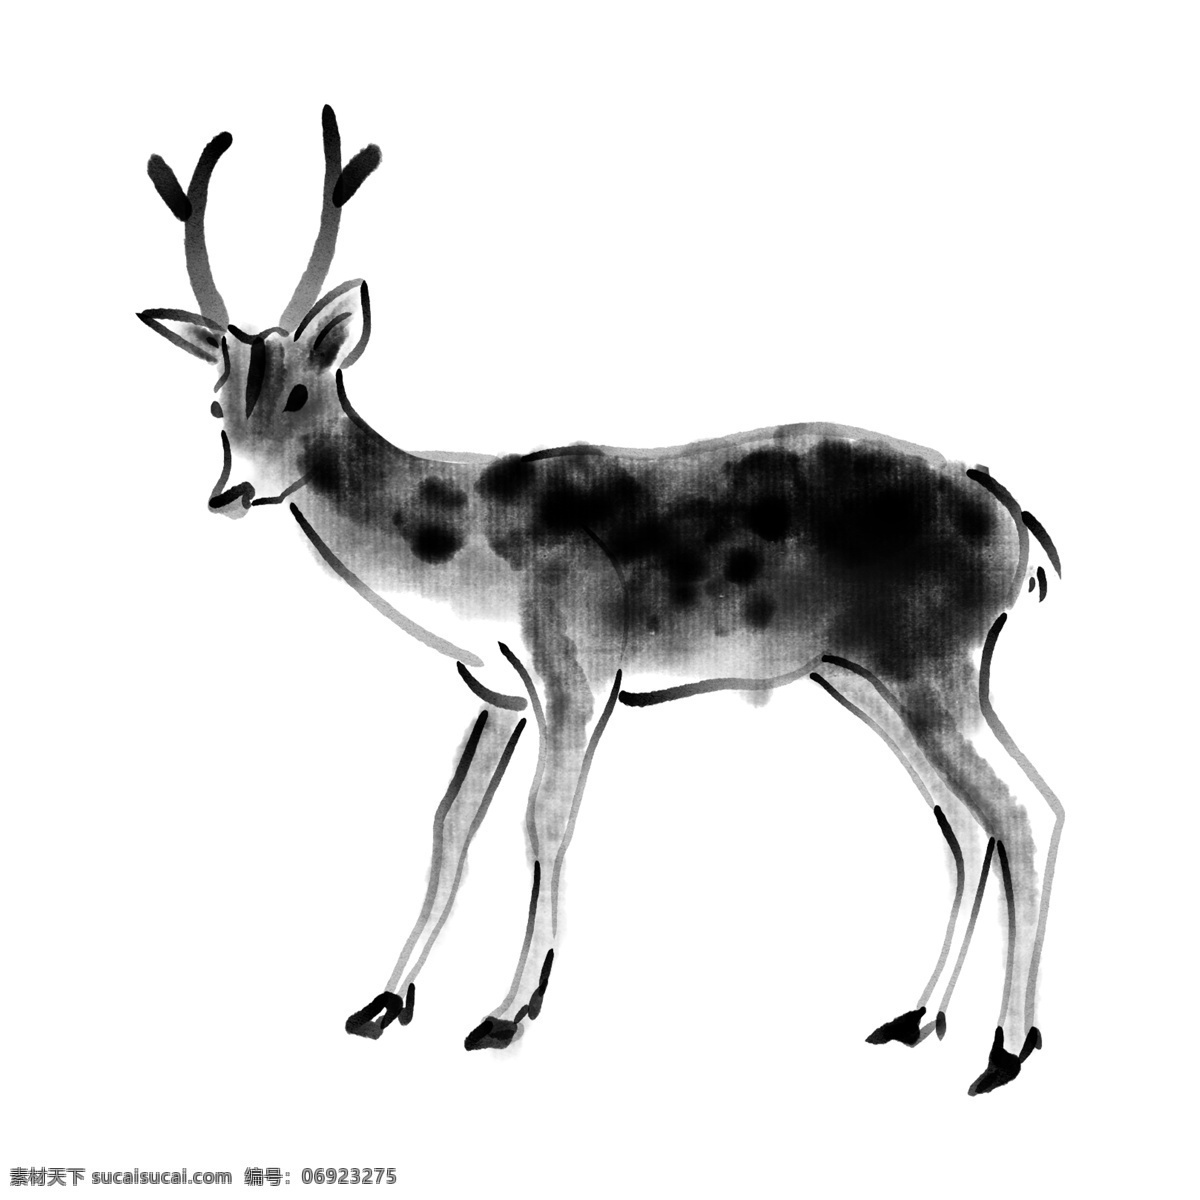 小鹿 国画 水墨 动物 创意 机敏 淡雅